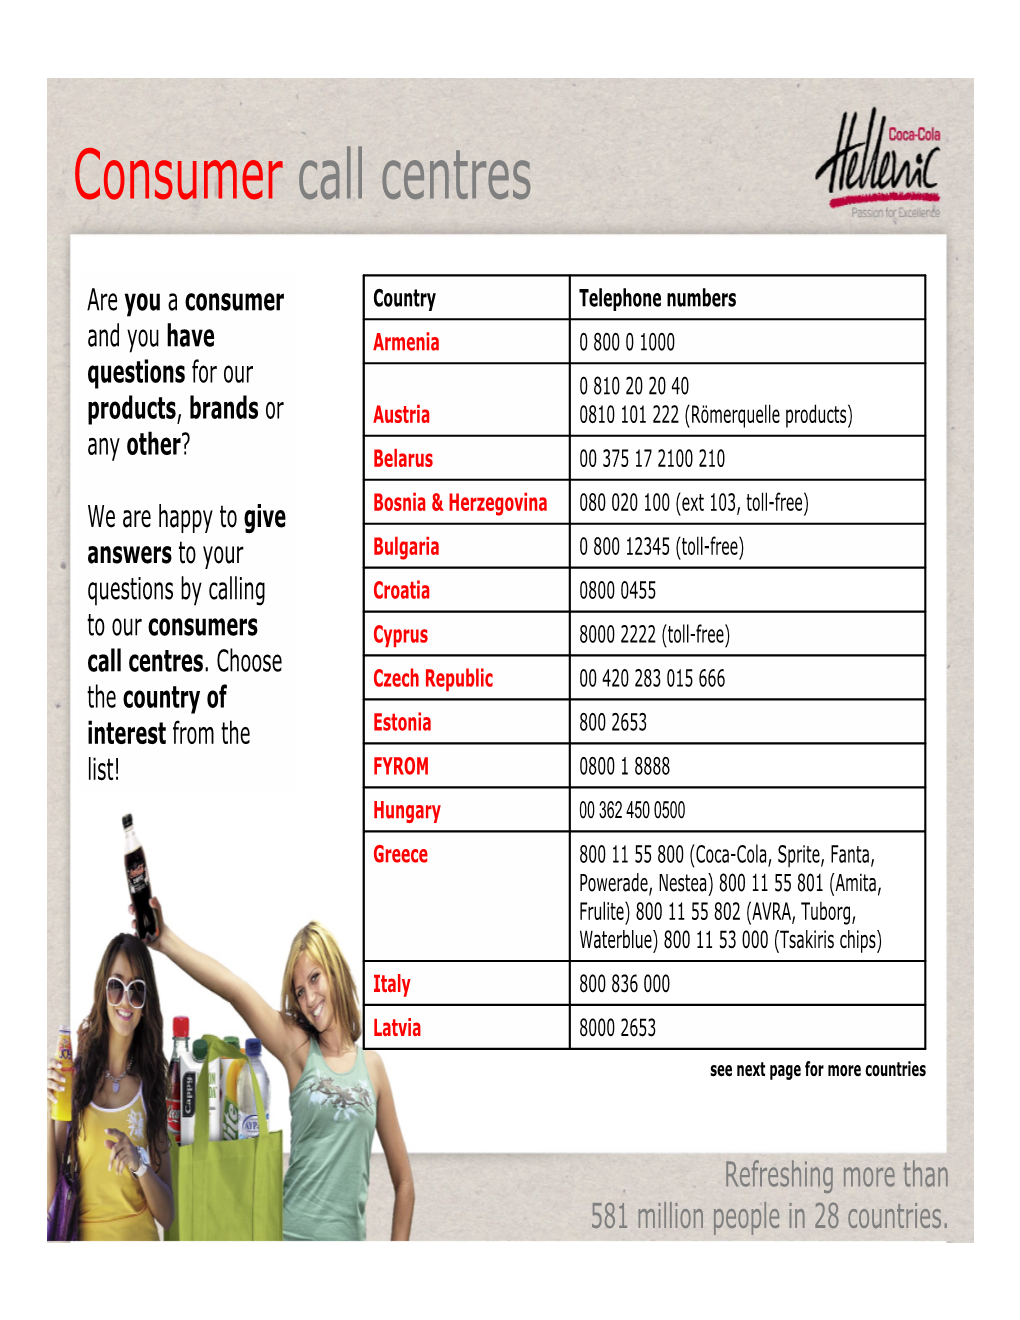 Consumer Call Centres